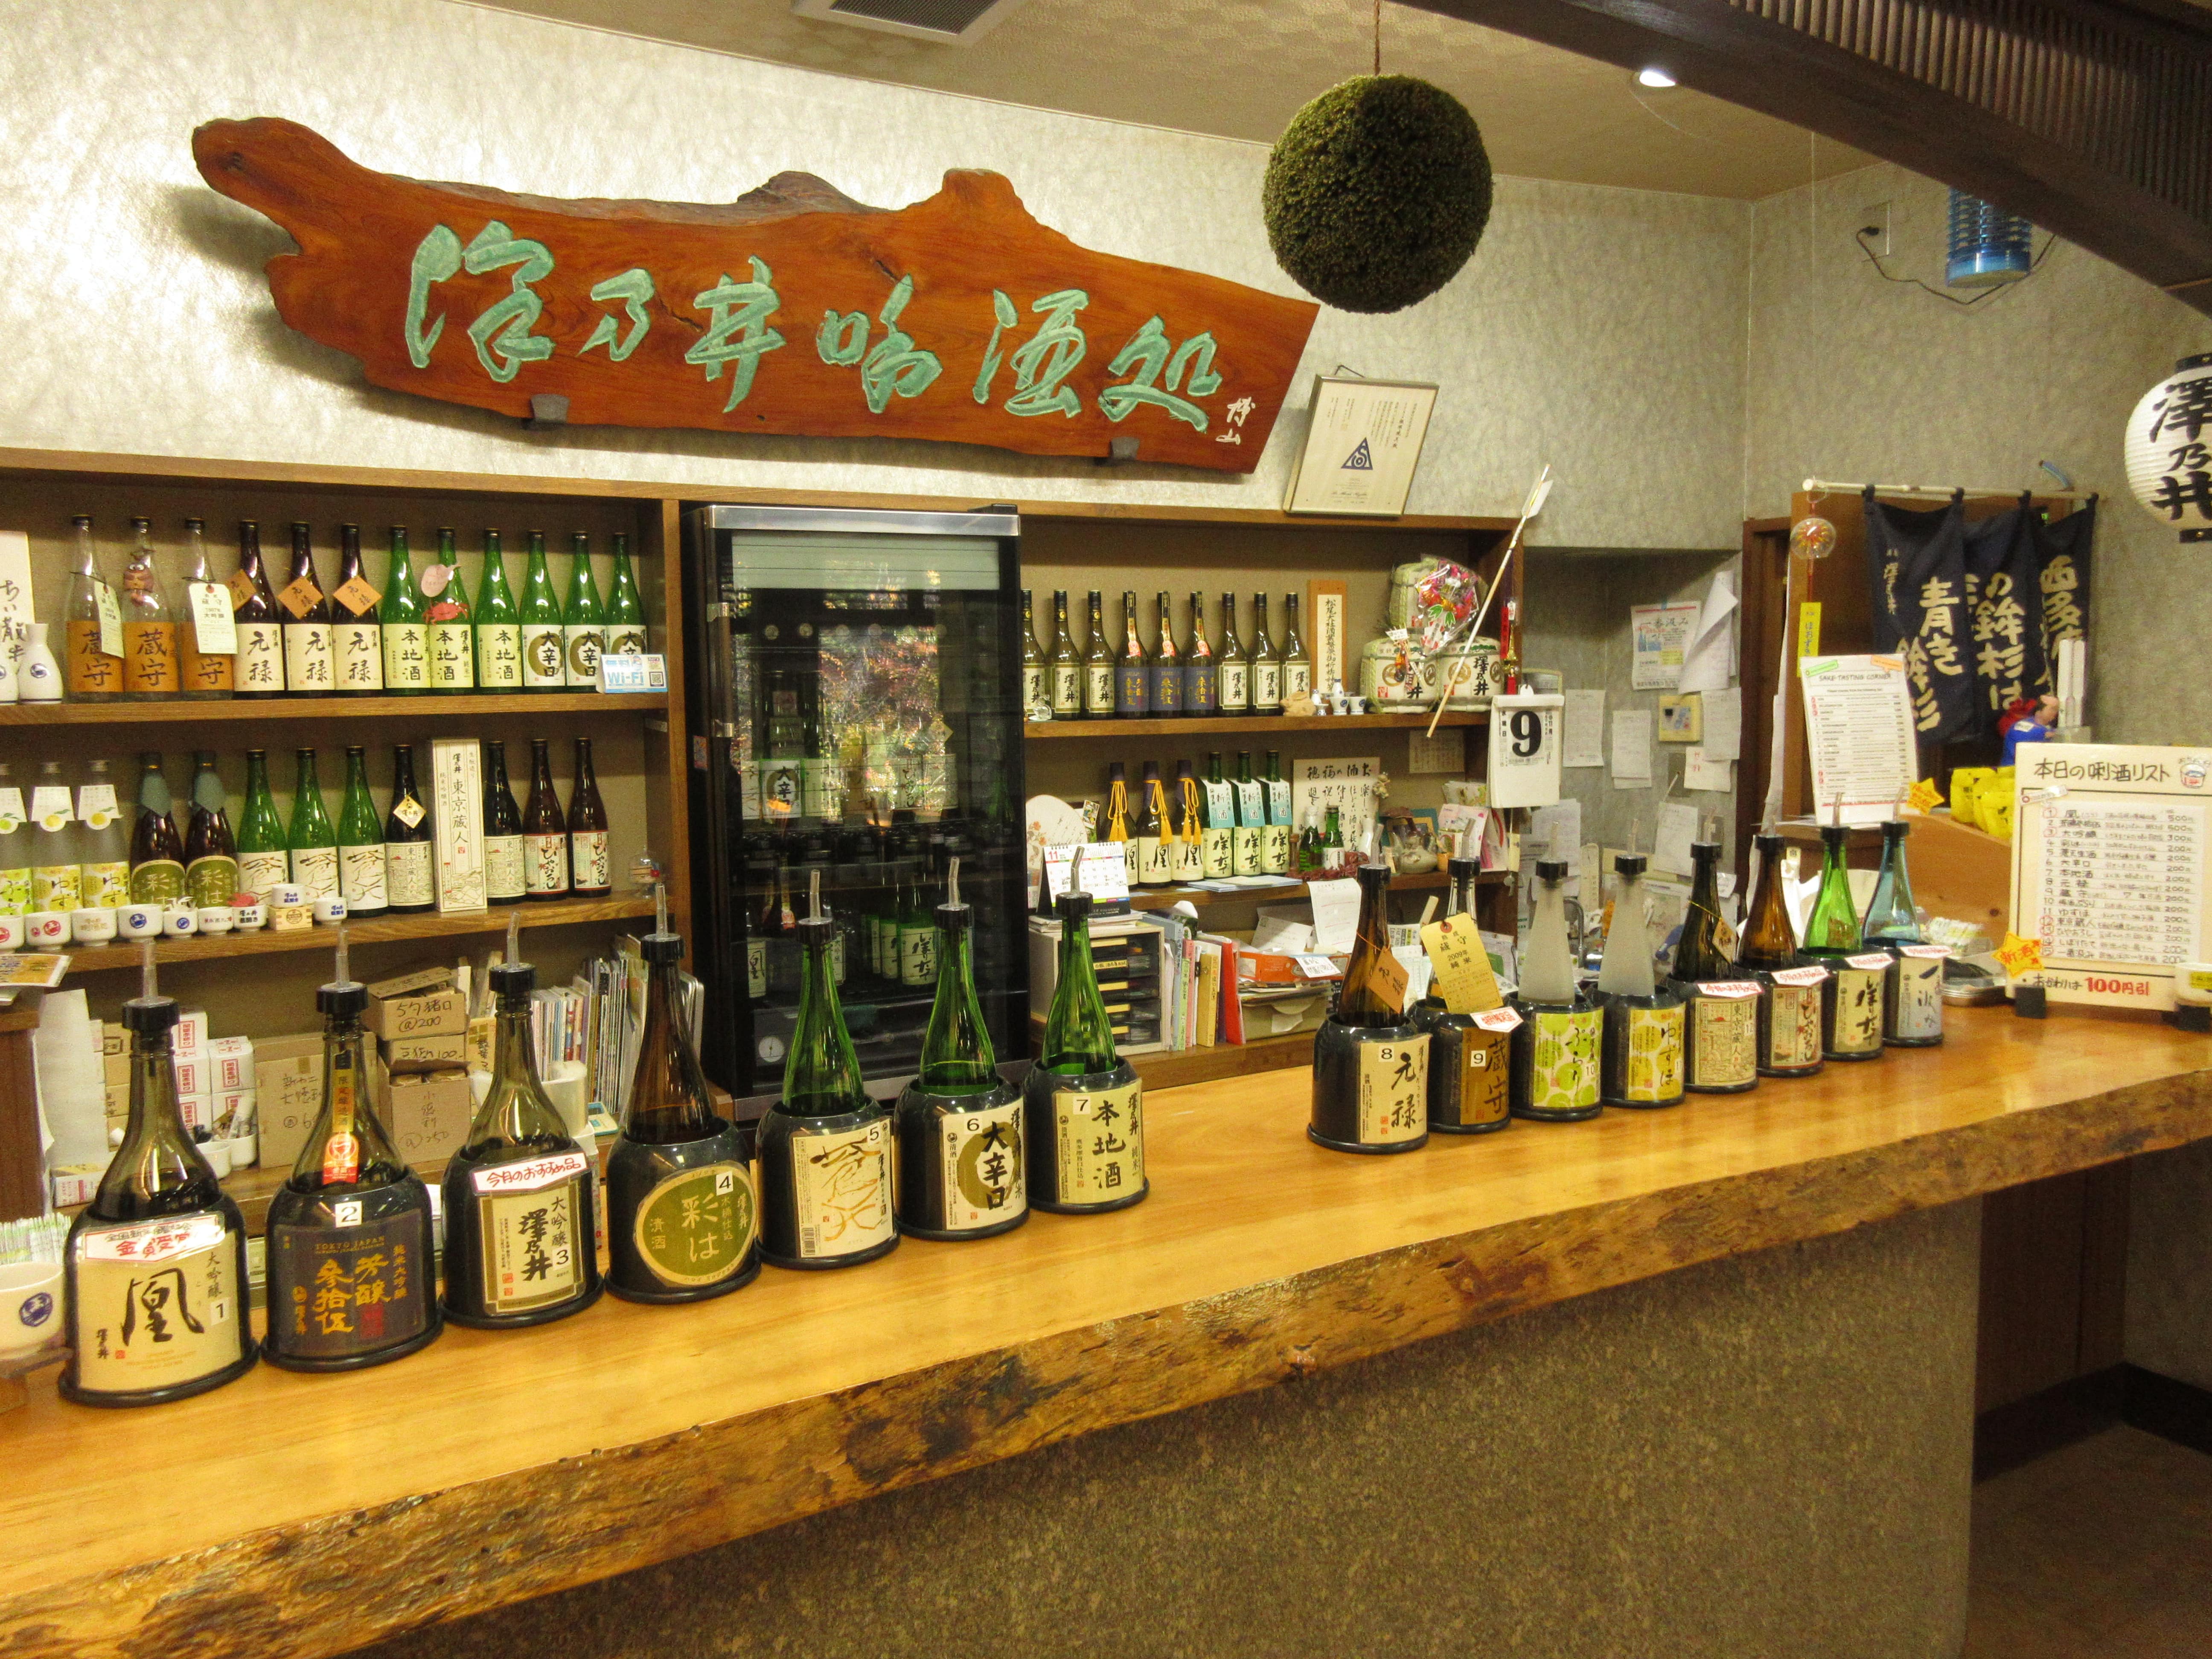 Japanese Sake Bottles